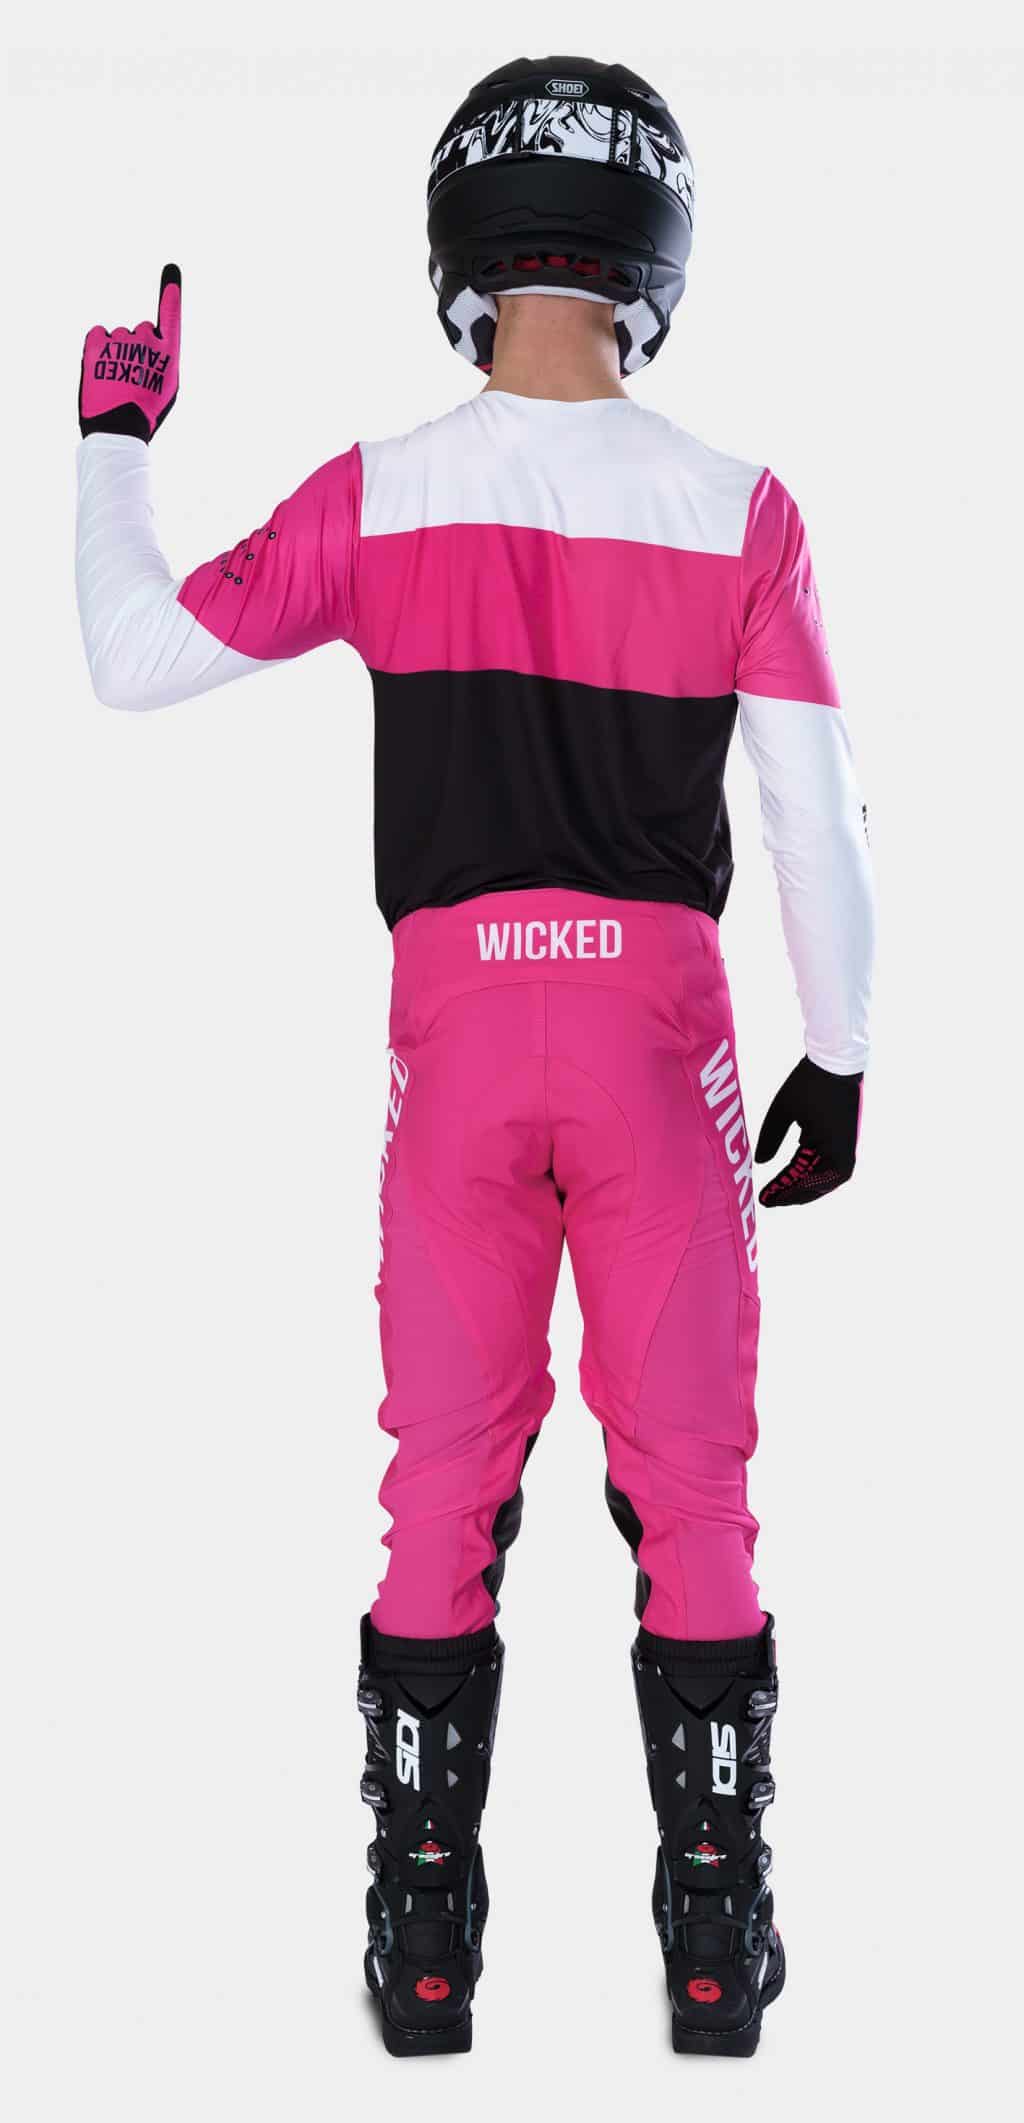 MX rider in pink motocross gear